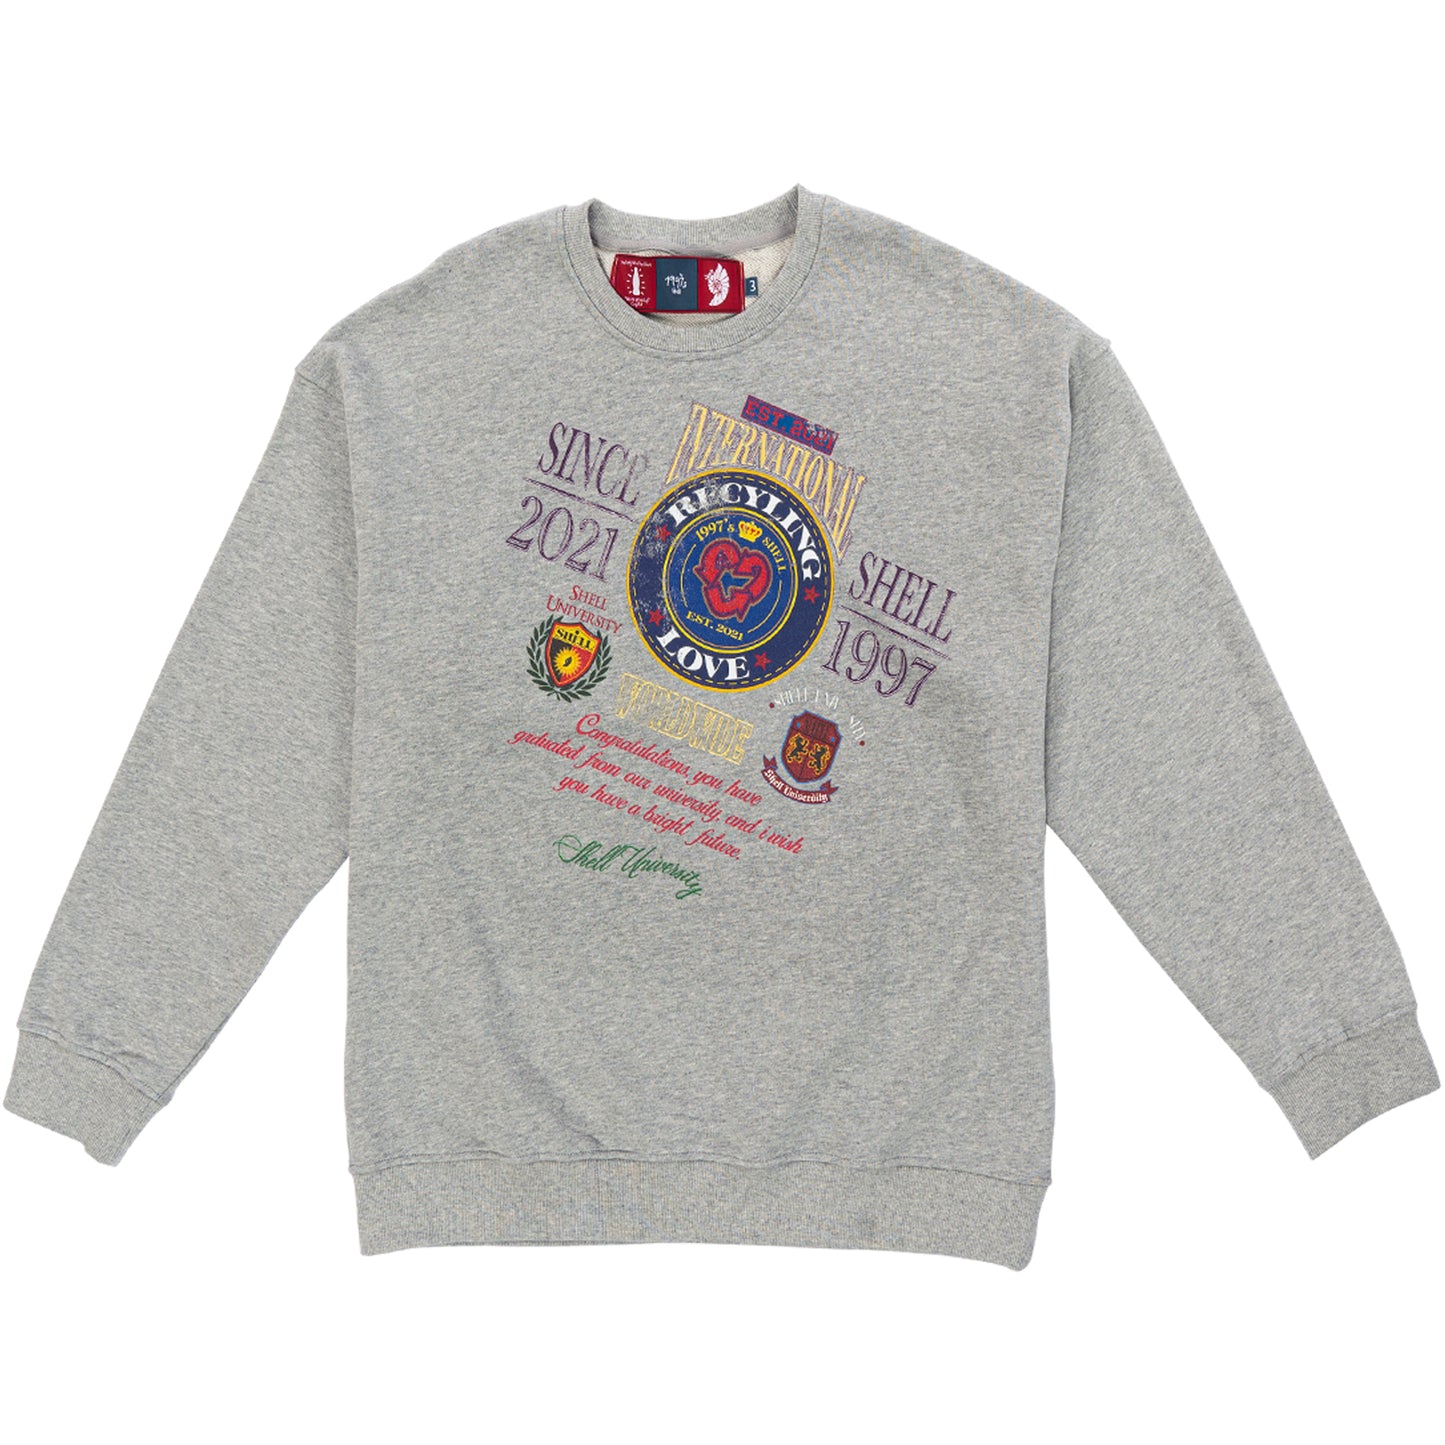 1997shell University Sweater